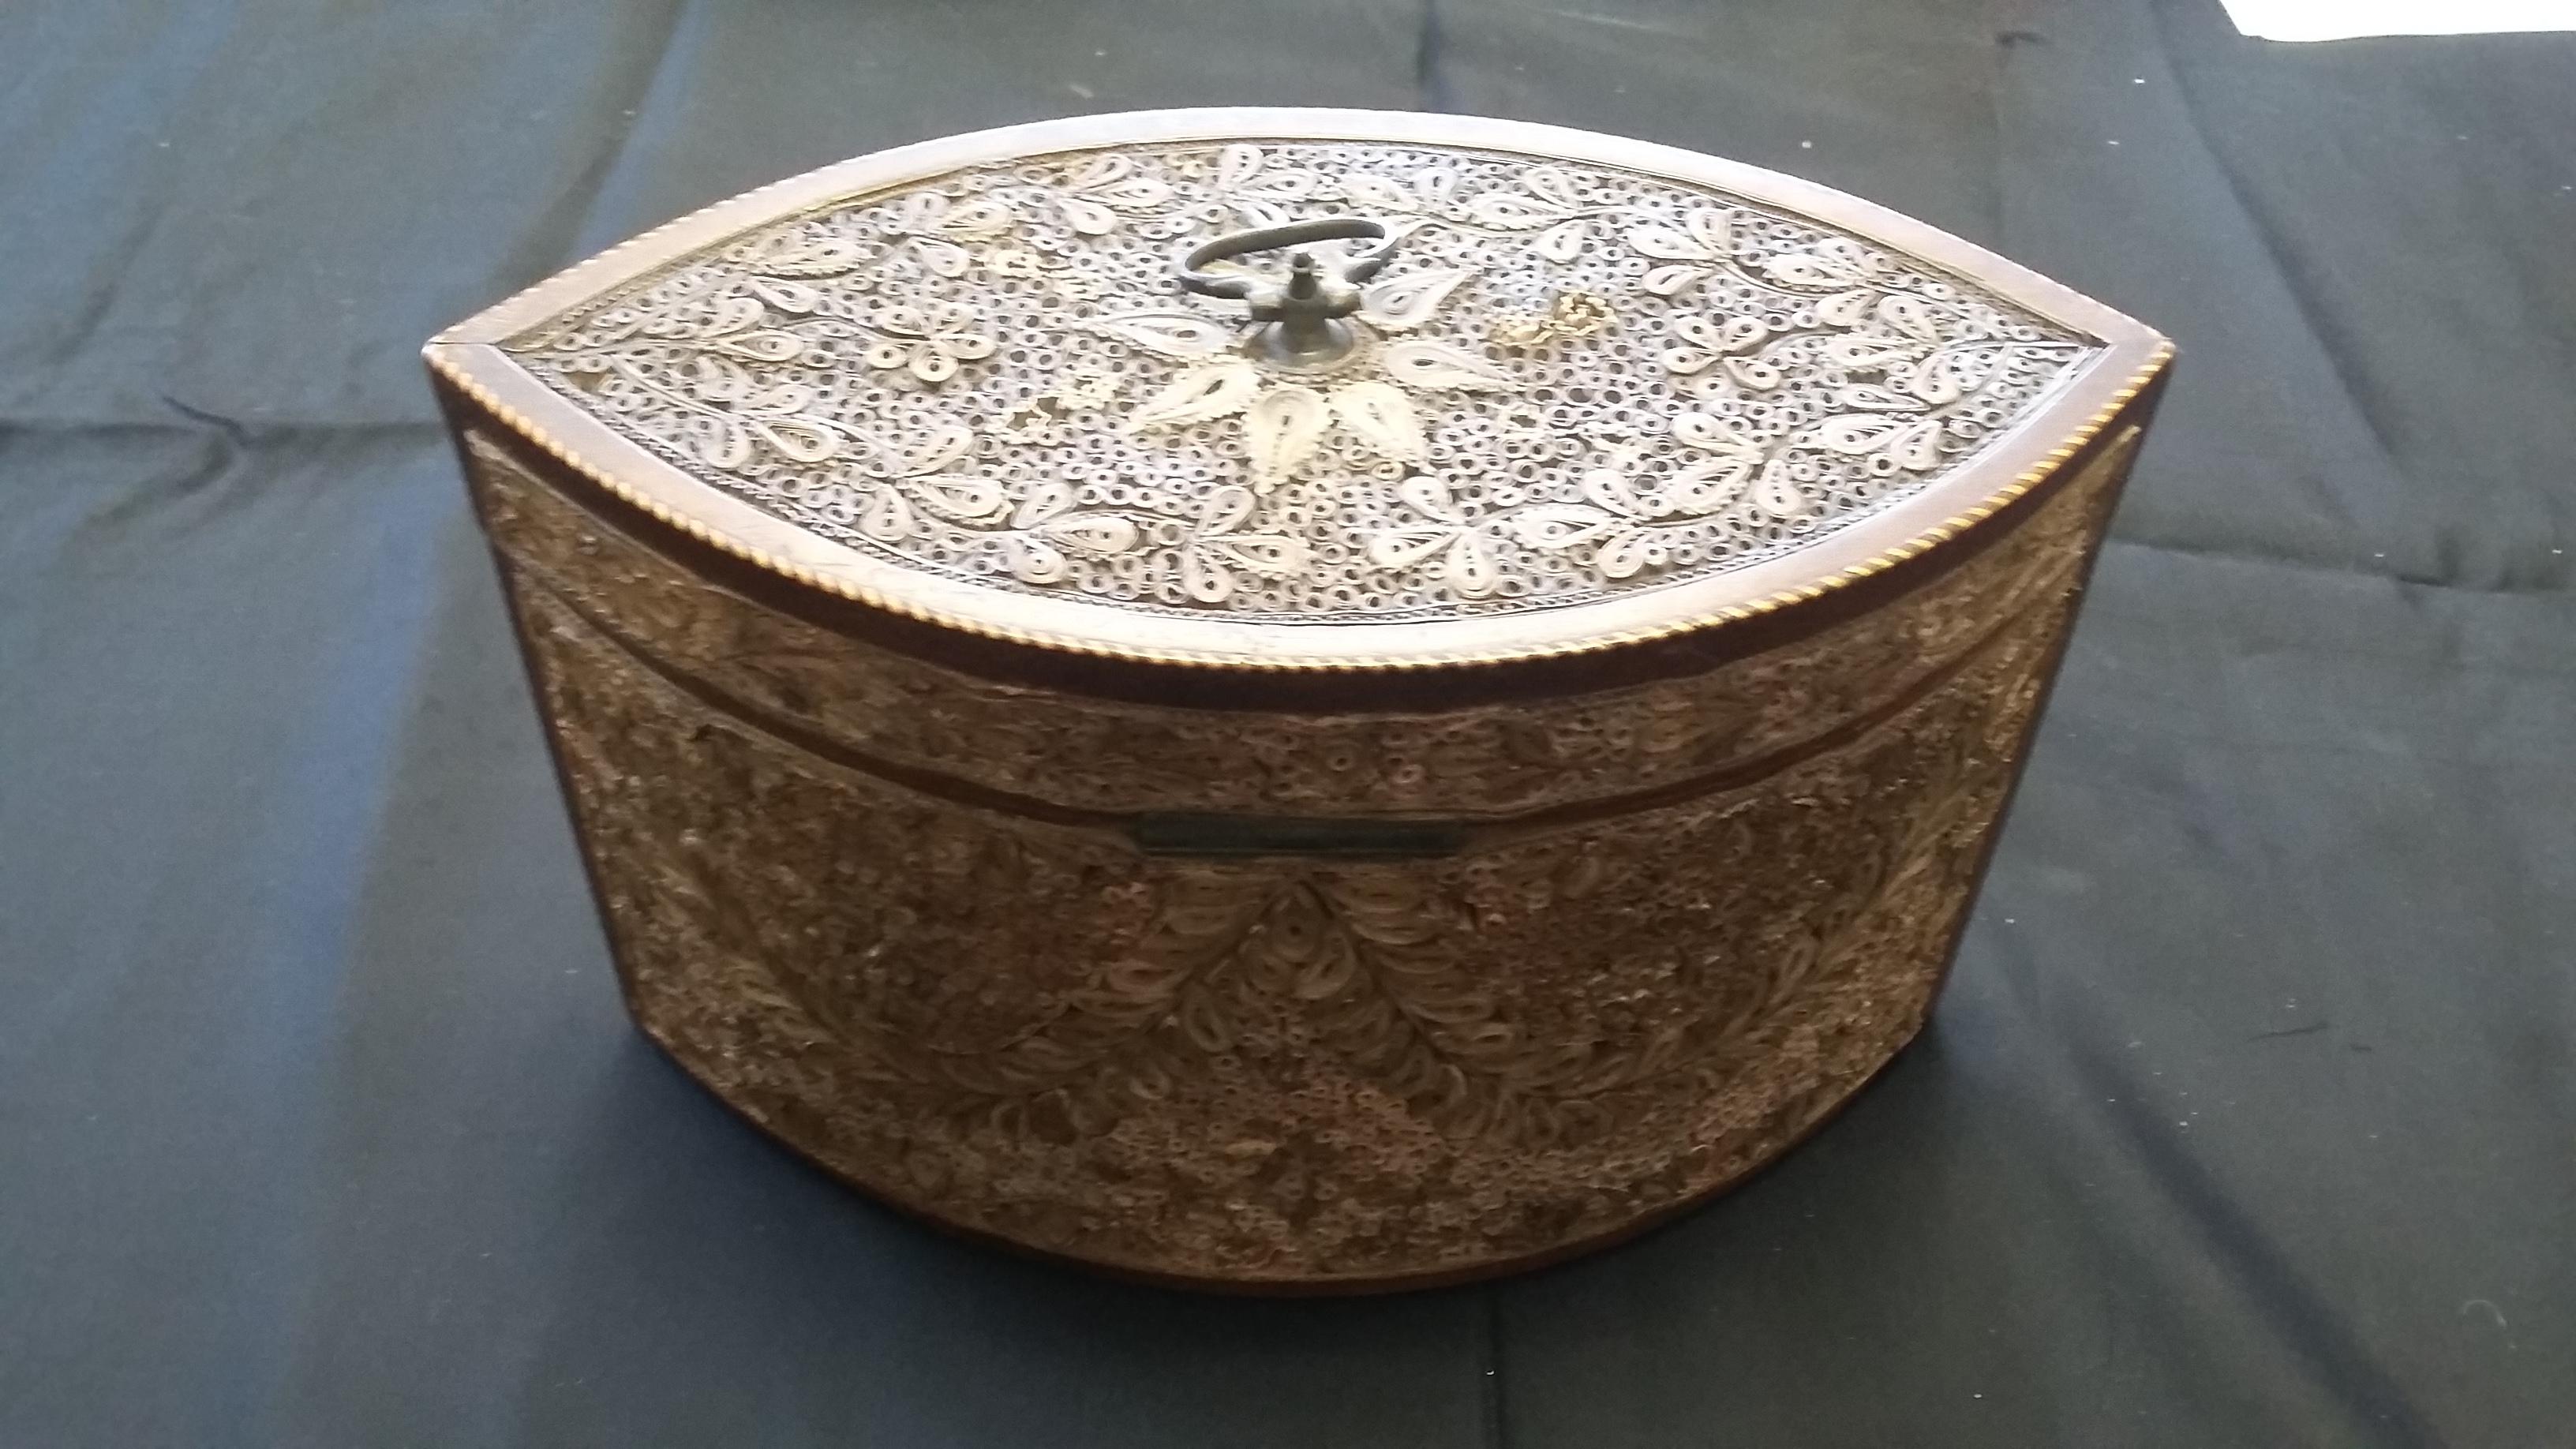 Boîte à thé de la fin du XVIIIe siècle, vers 1790. Une boîte ovale très détaillée, méticuleusement fabriquée à partir de papier 